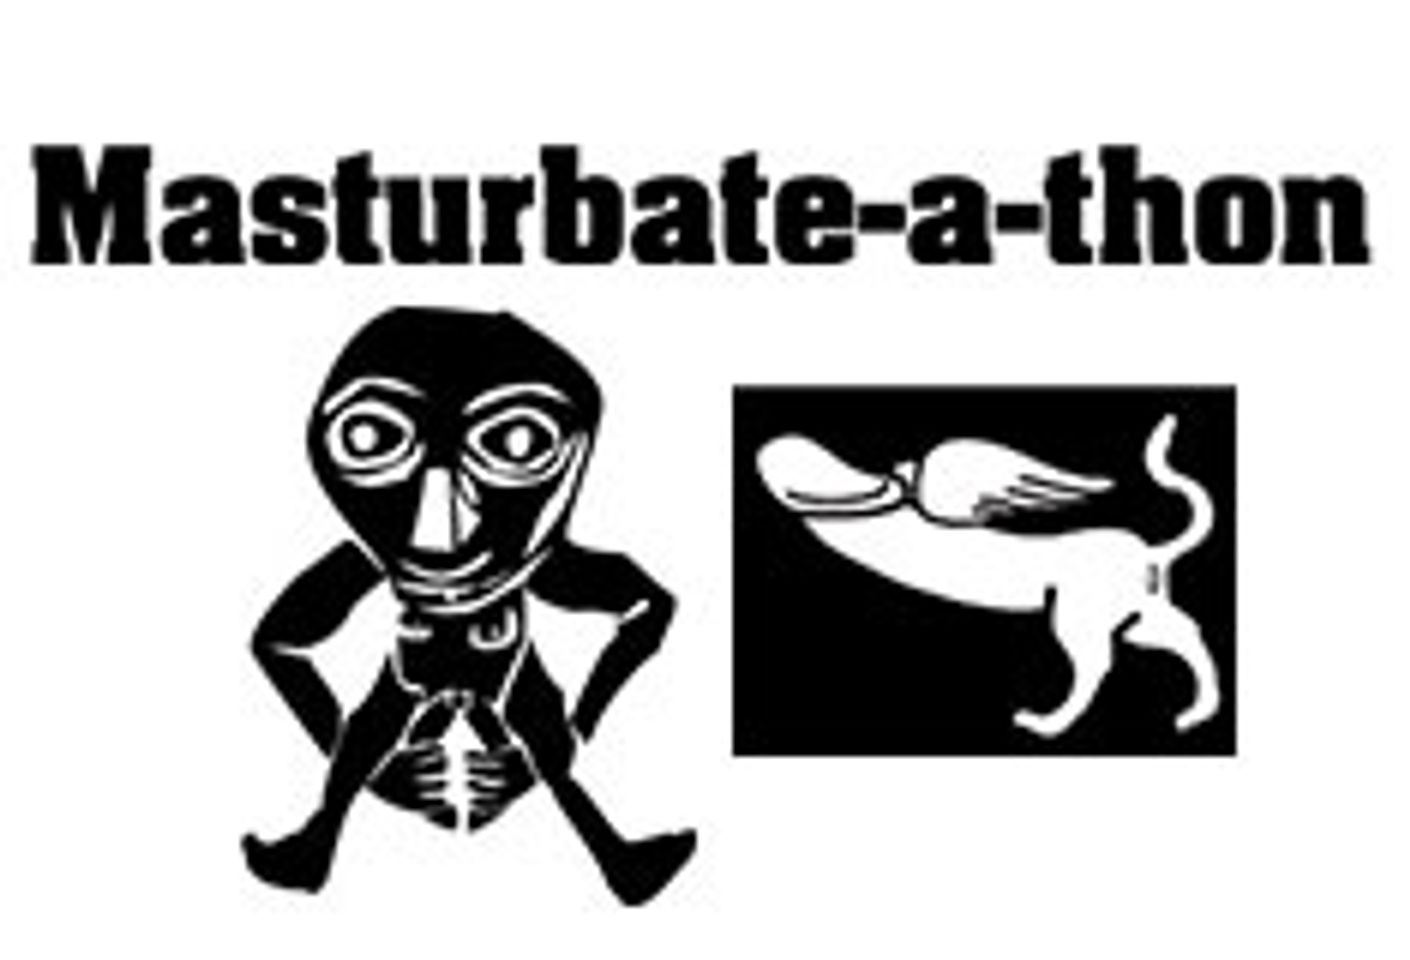 7th Annual Masturbate-A-Thon Comes to SF